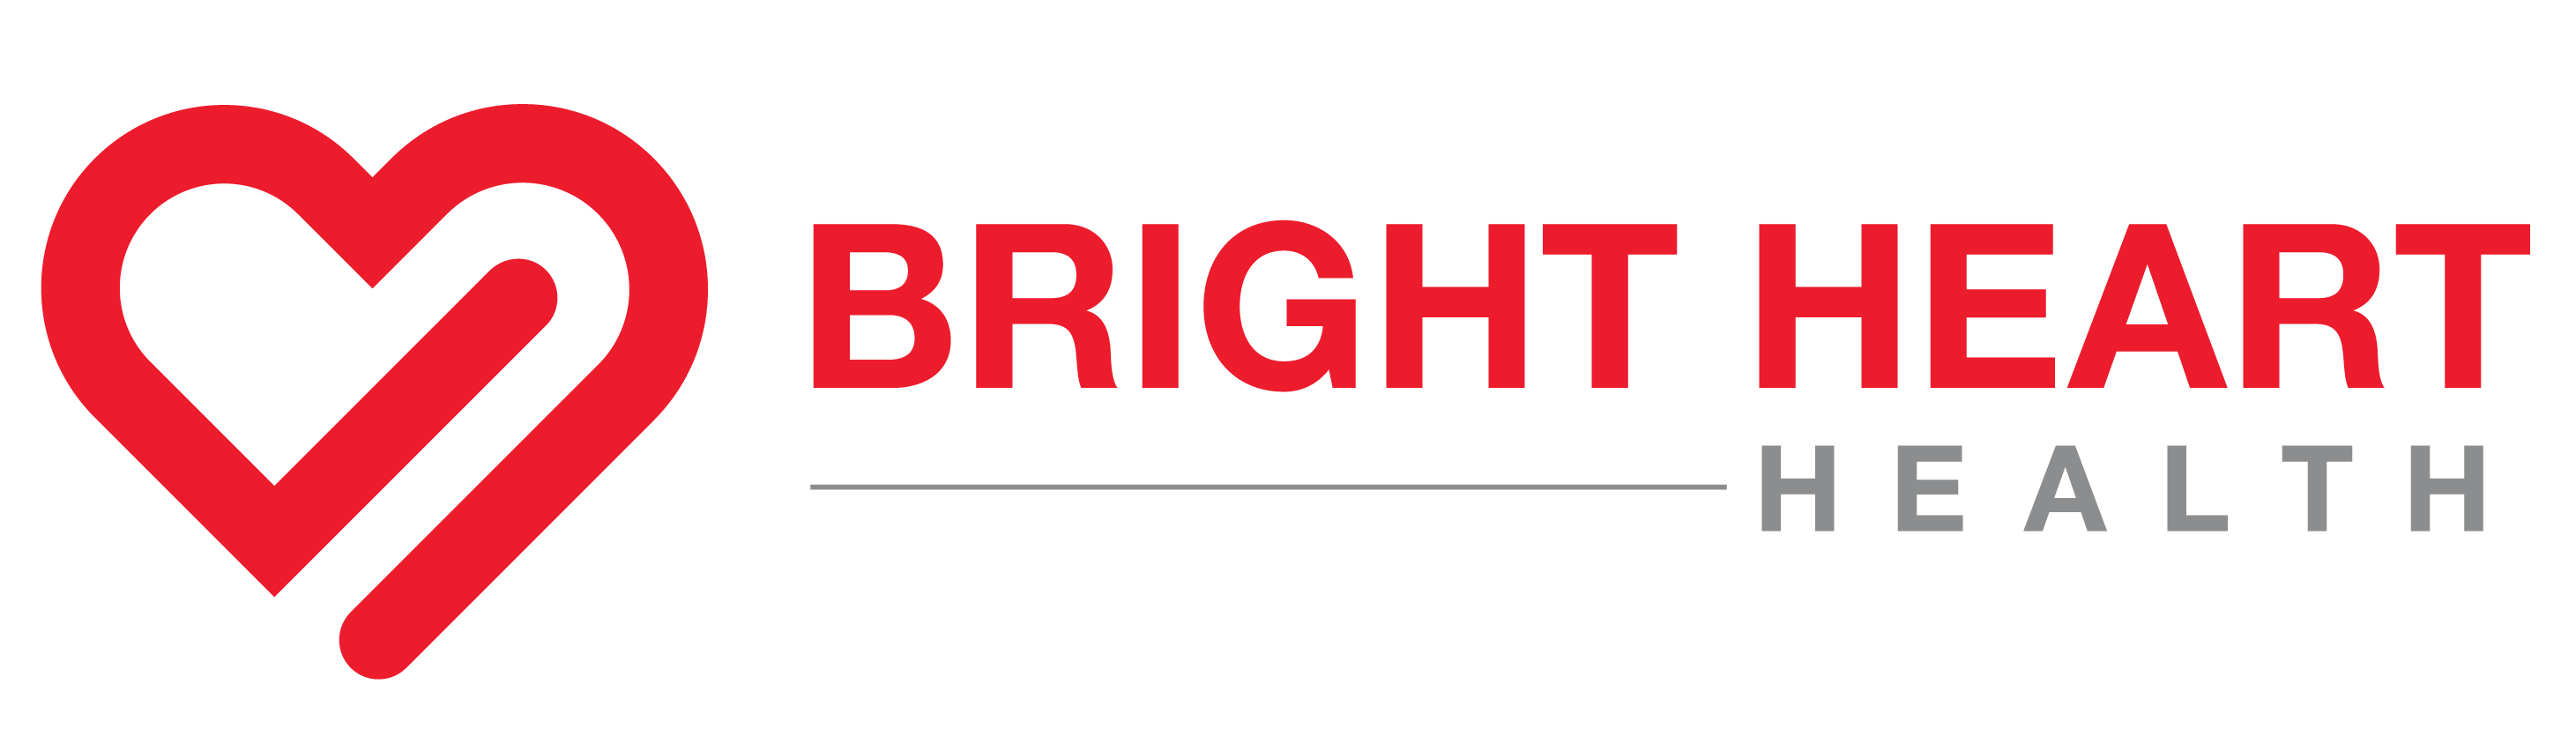 Bright Heart Health - Logo